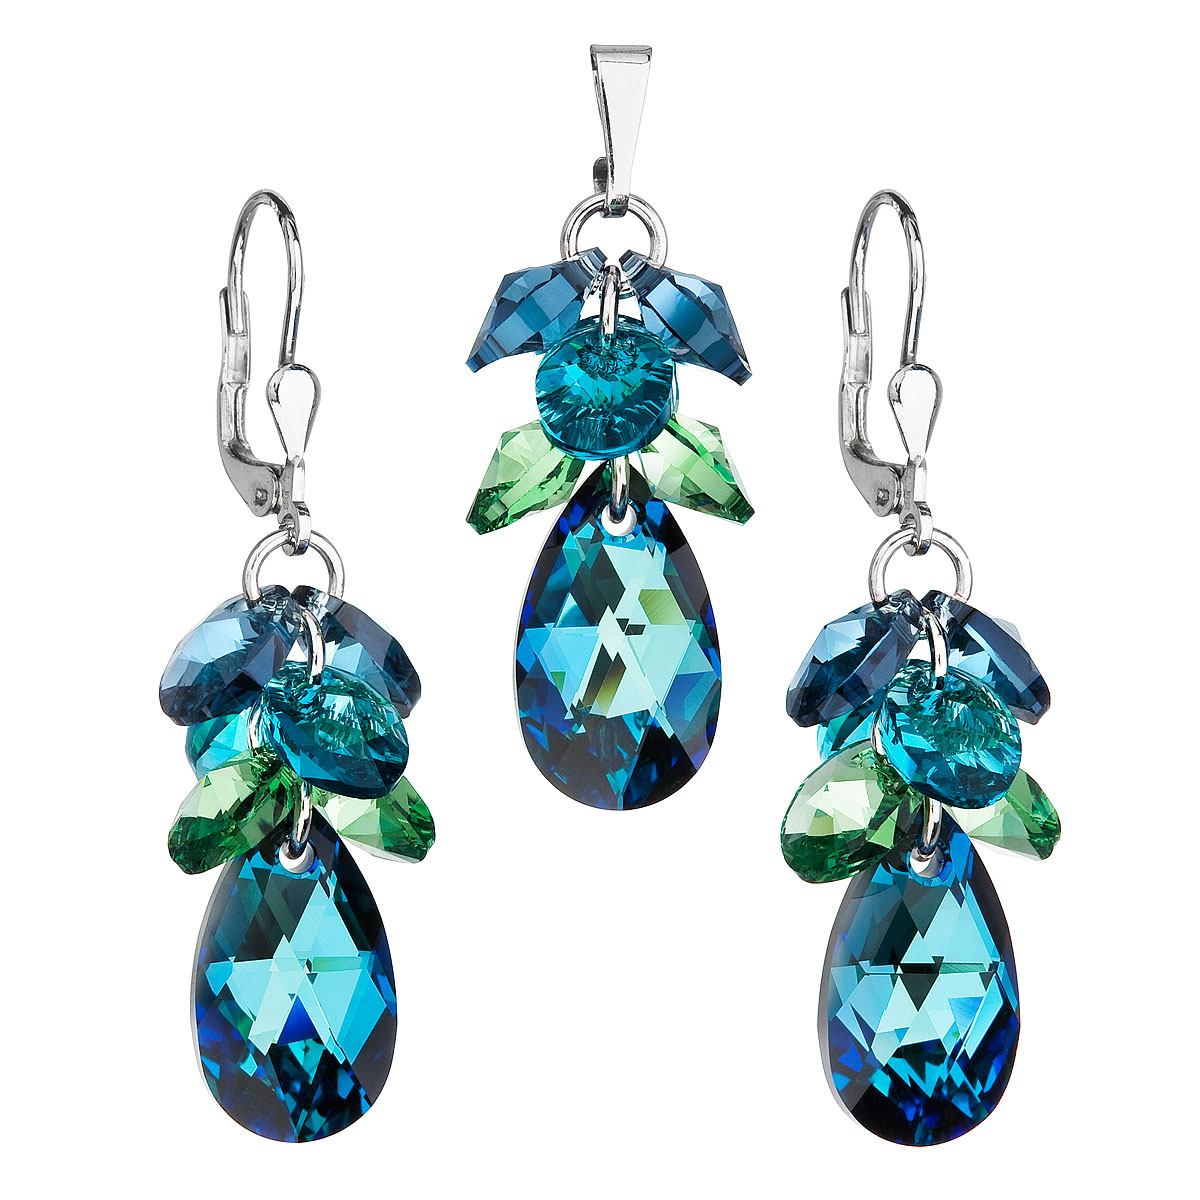 Evolution Group Sada šperků s krystaly Swarovski náušnice a přívěsek modrý hrozen 39123.5